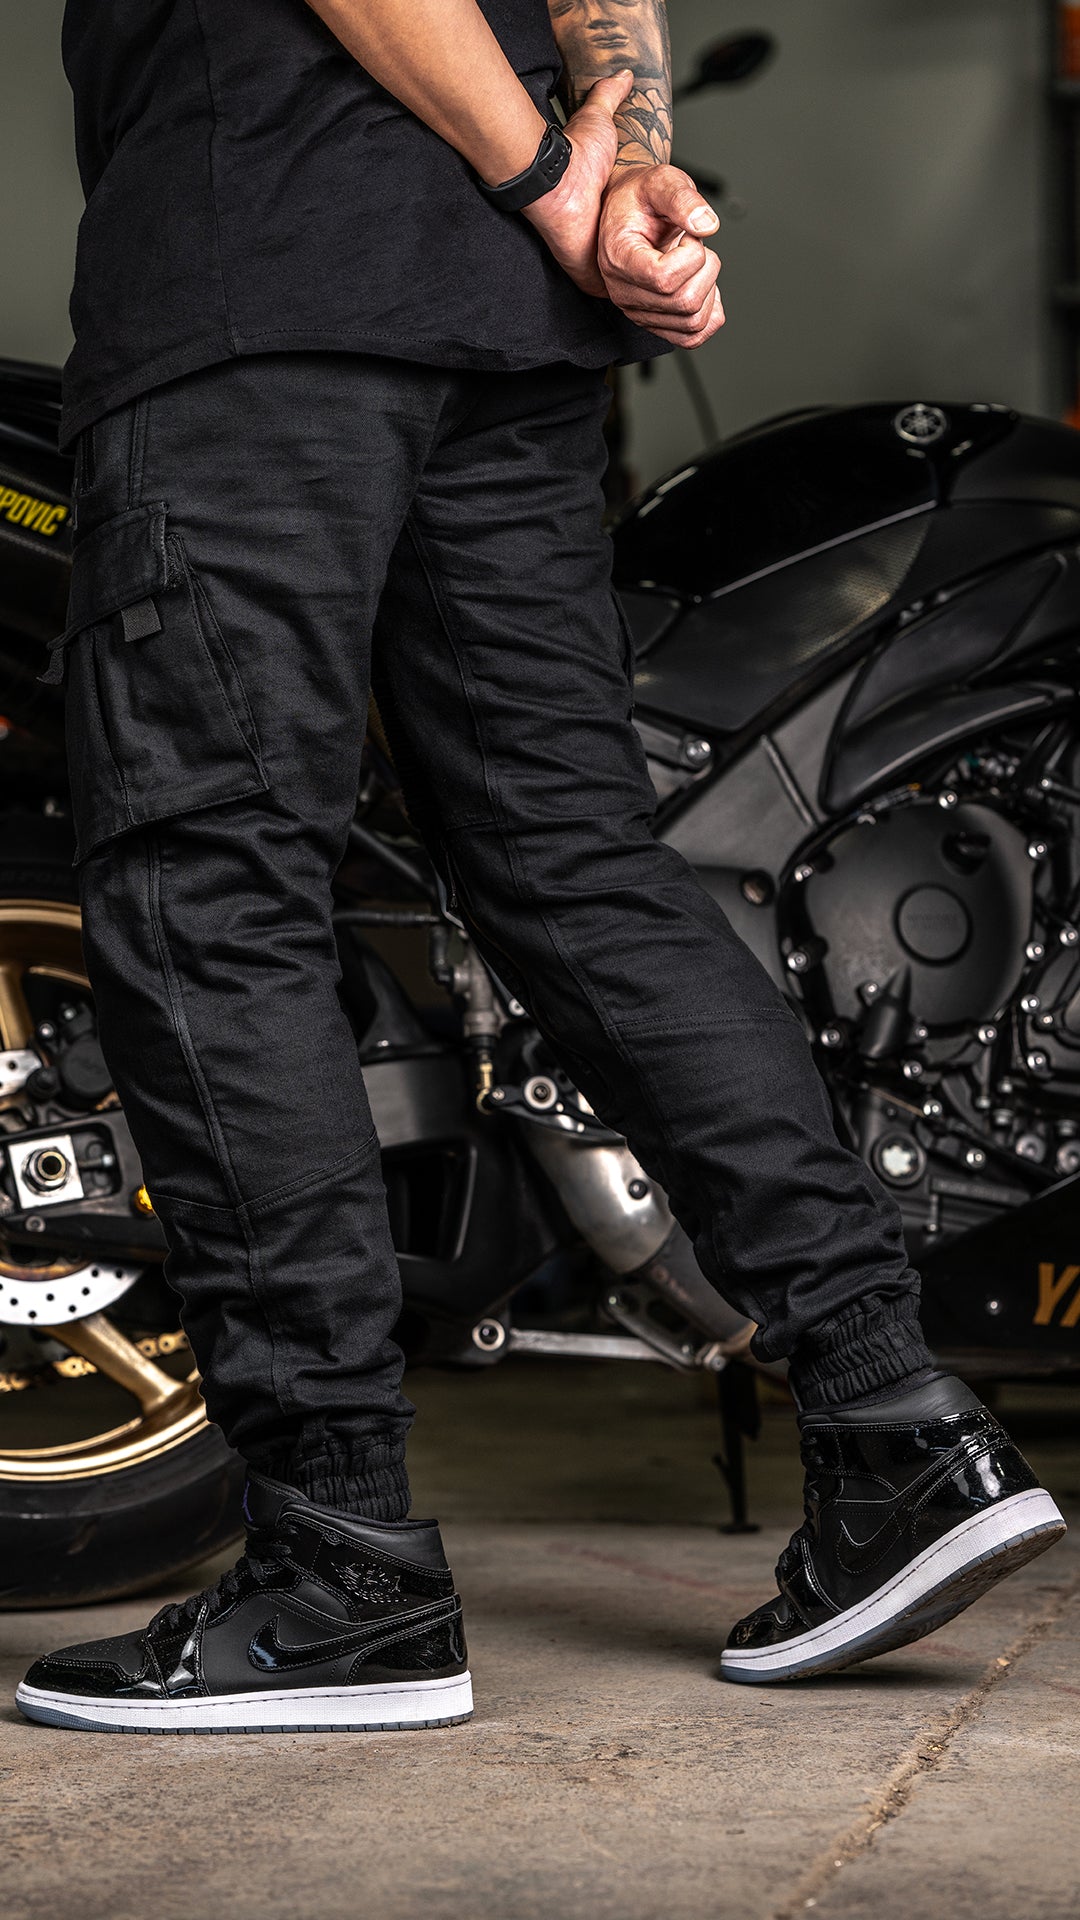 Pantalón con protecciones Cargo Rider Style CE Moto - Black 